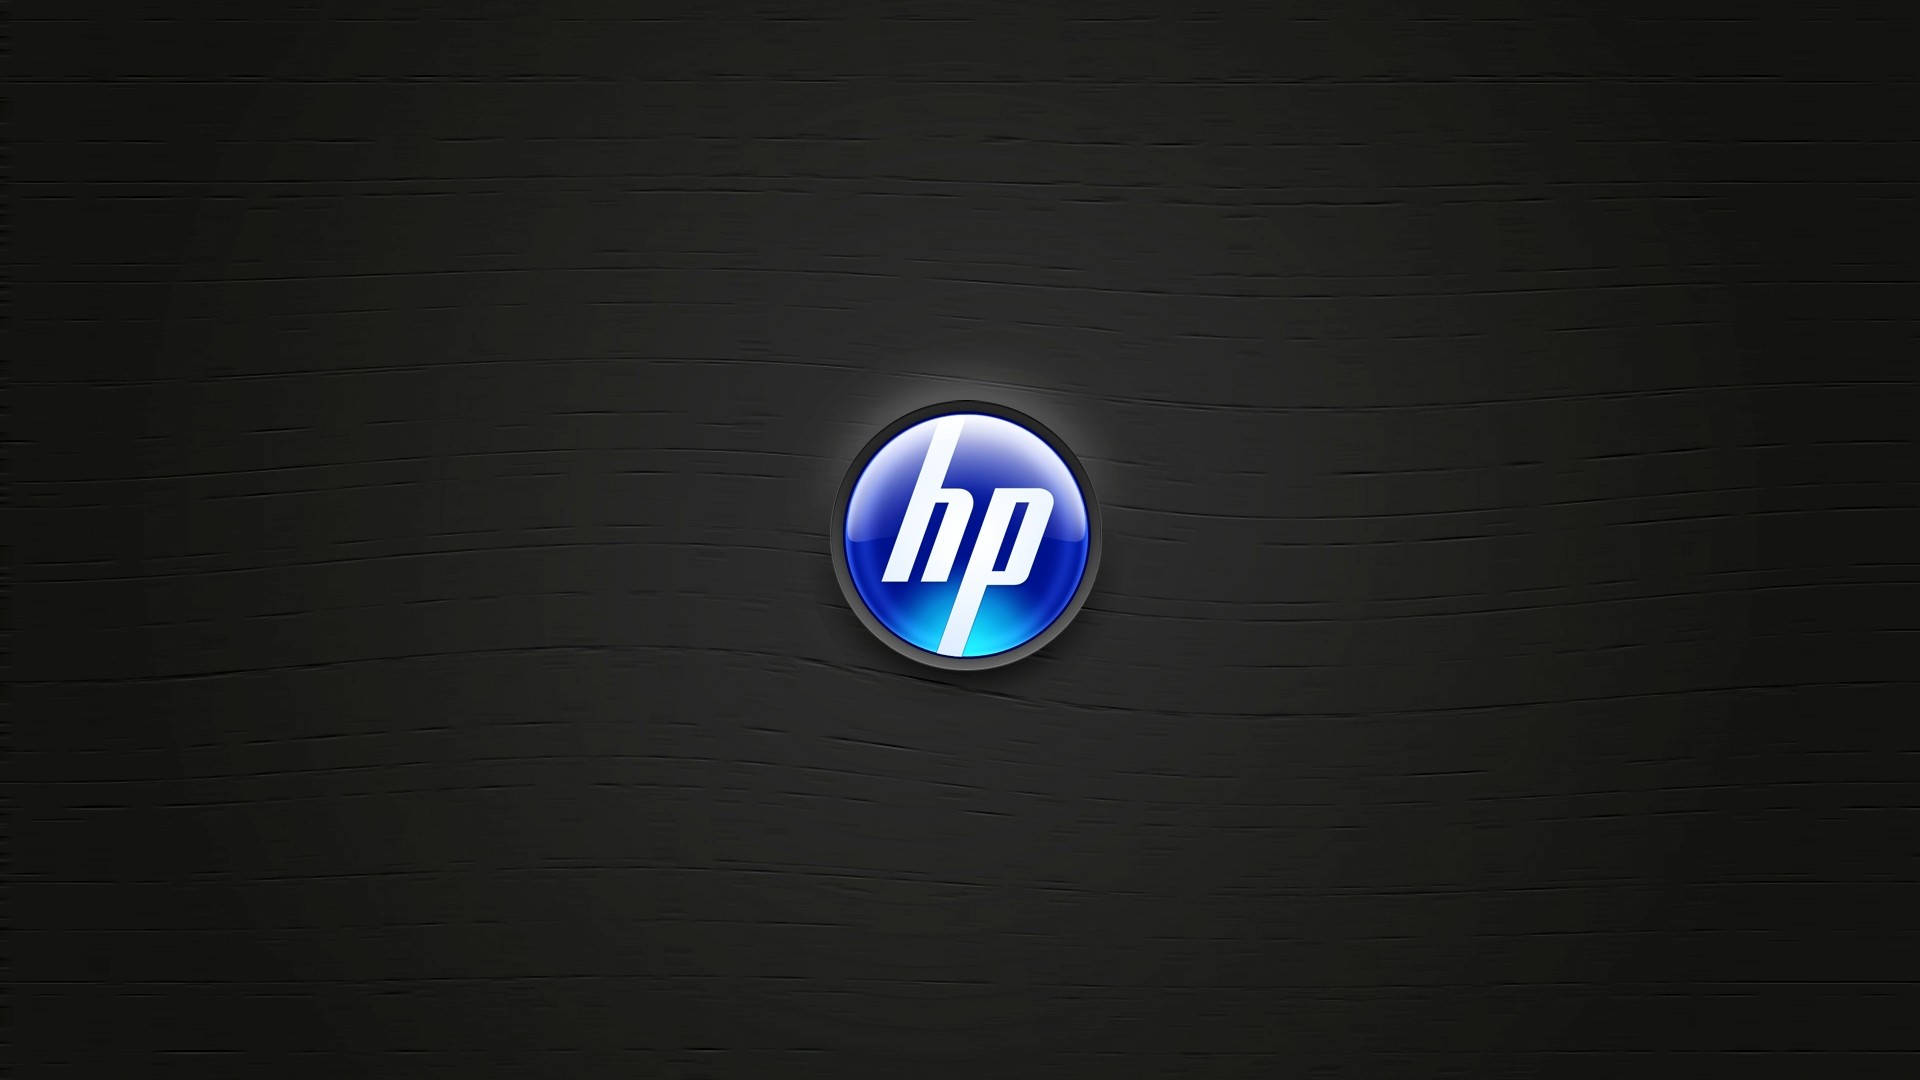 Iconic Blue Hp Laptop Logo